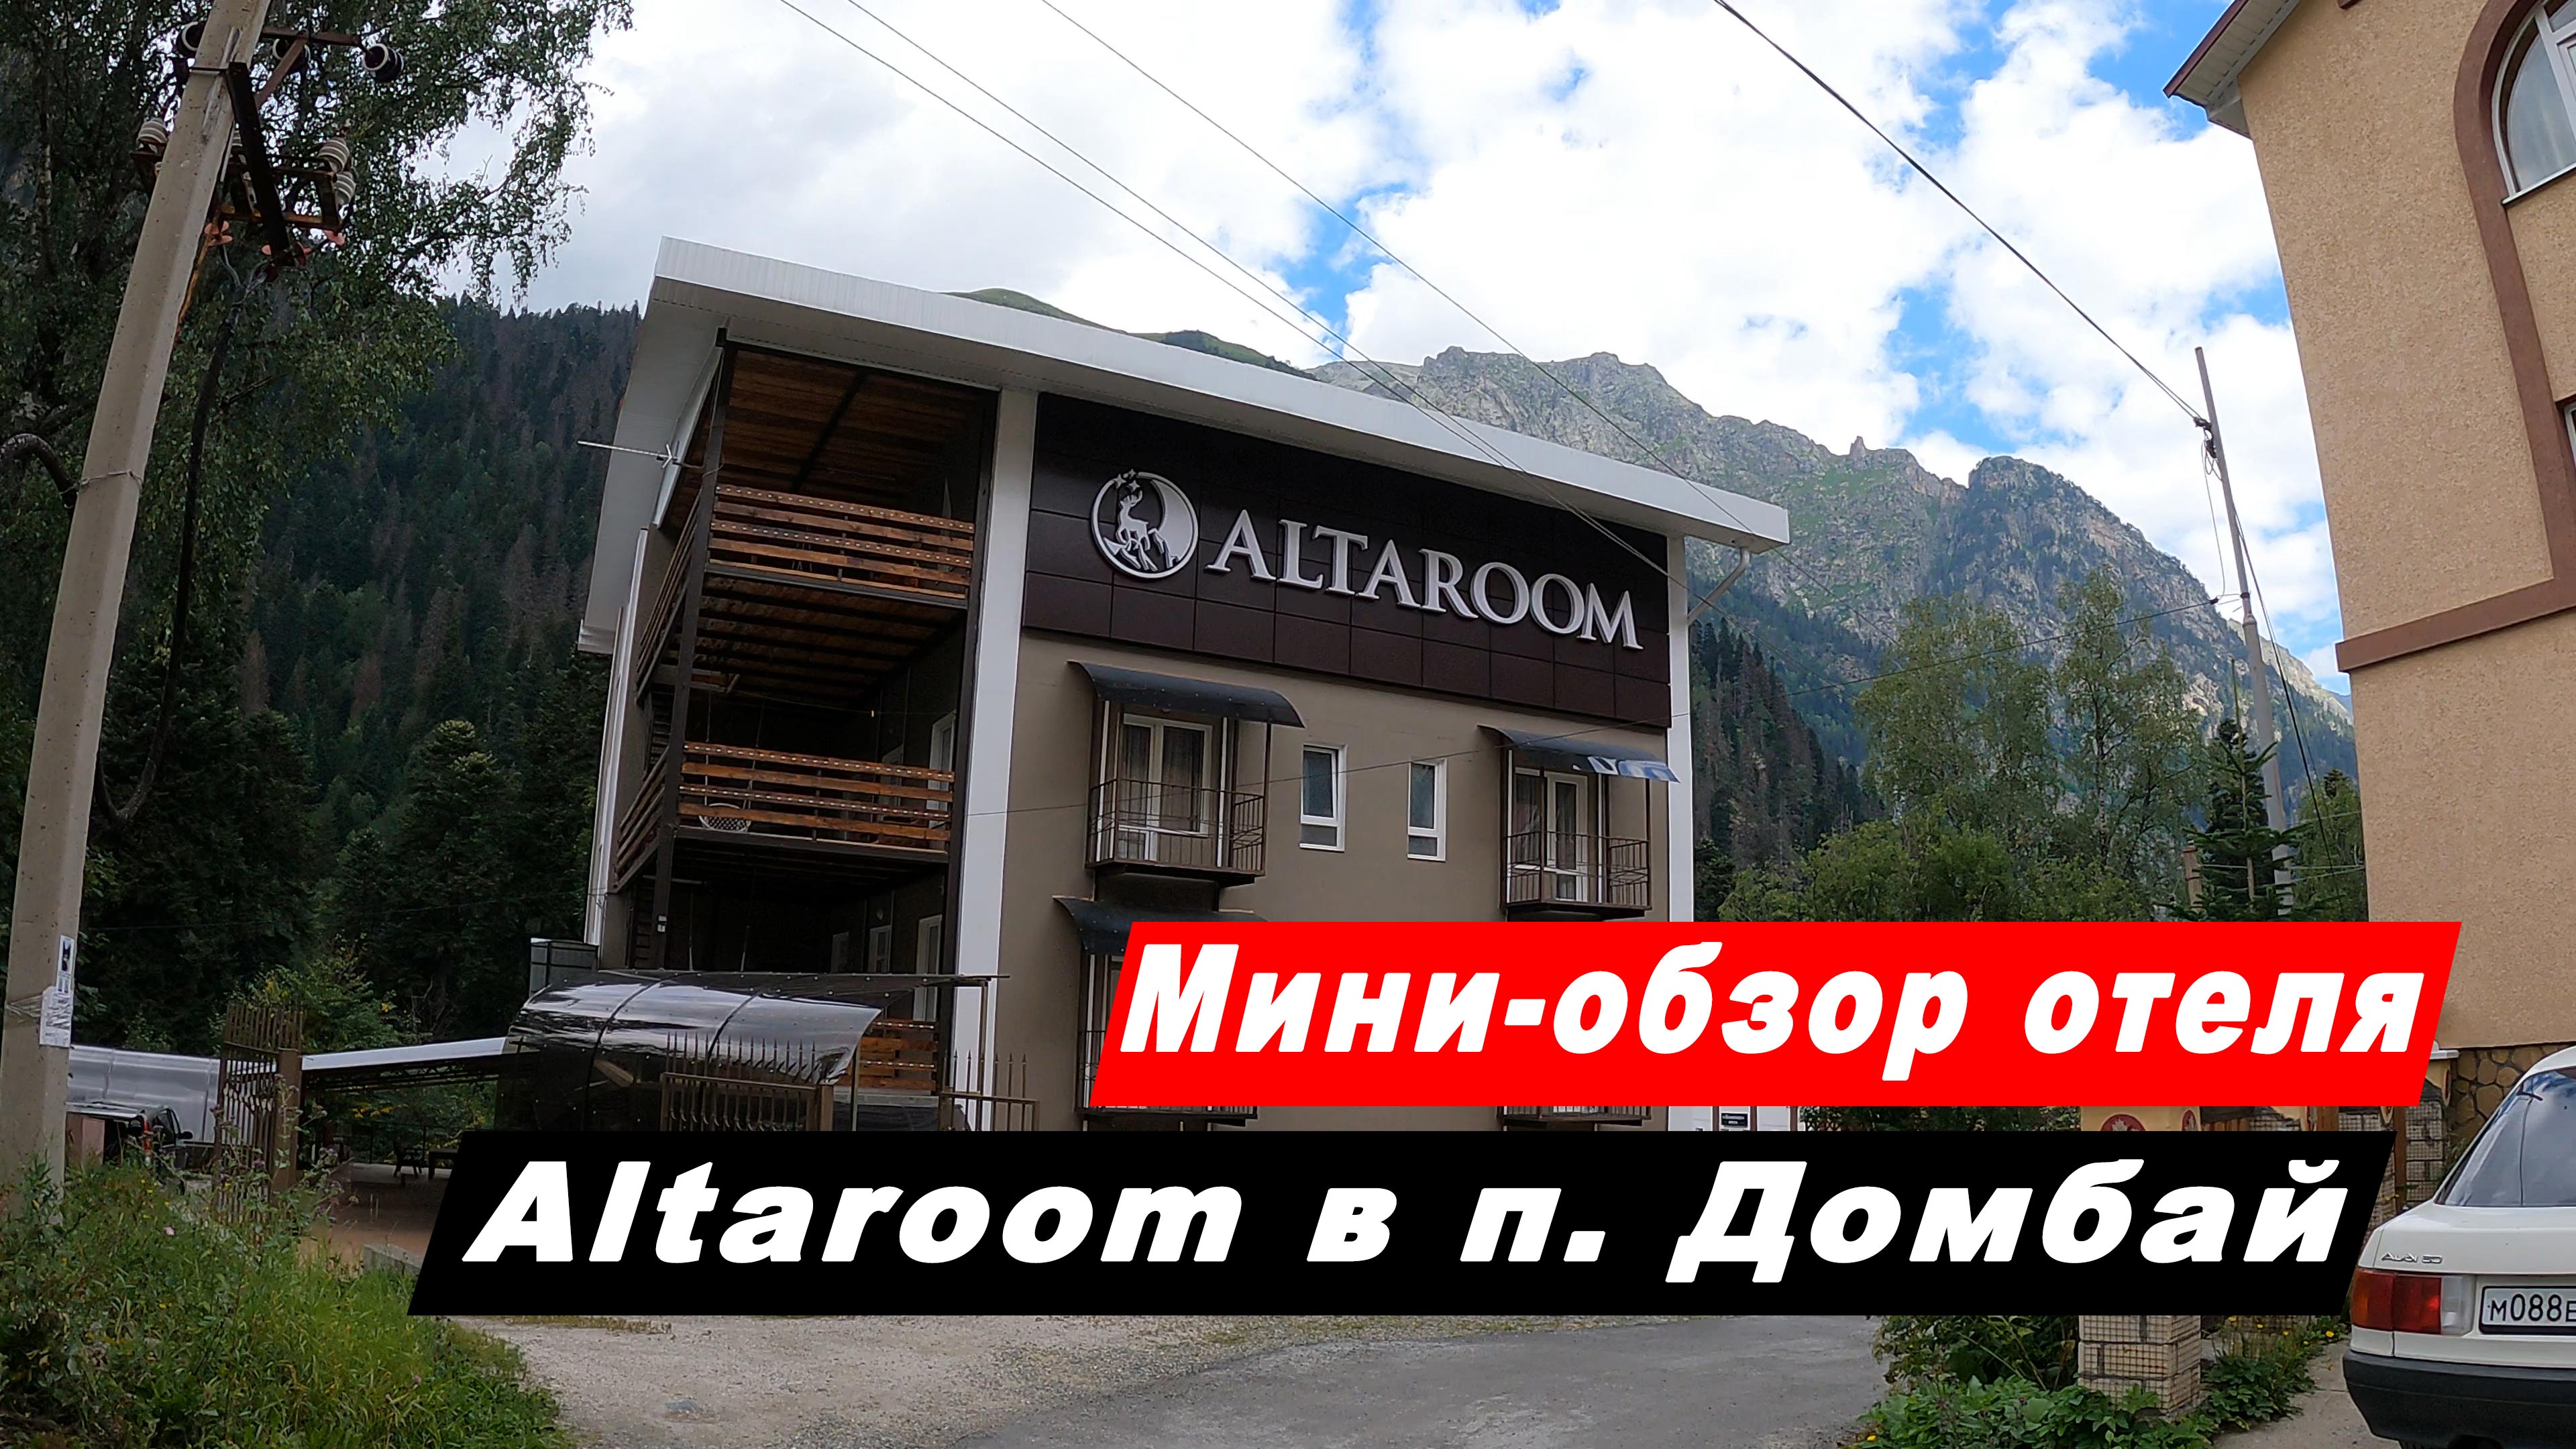 Мини-обзор отеля Альтарум в посёлке Домбай. Altaroom hotel Домбай. Карачаево-Черкесская Республика.